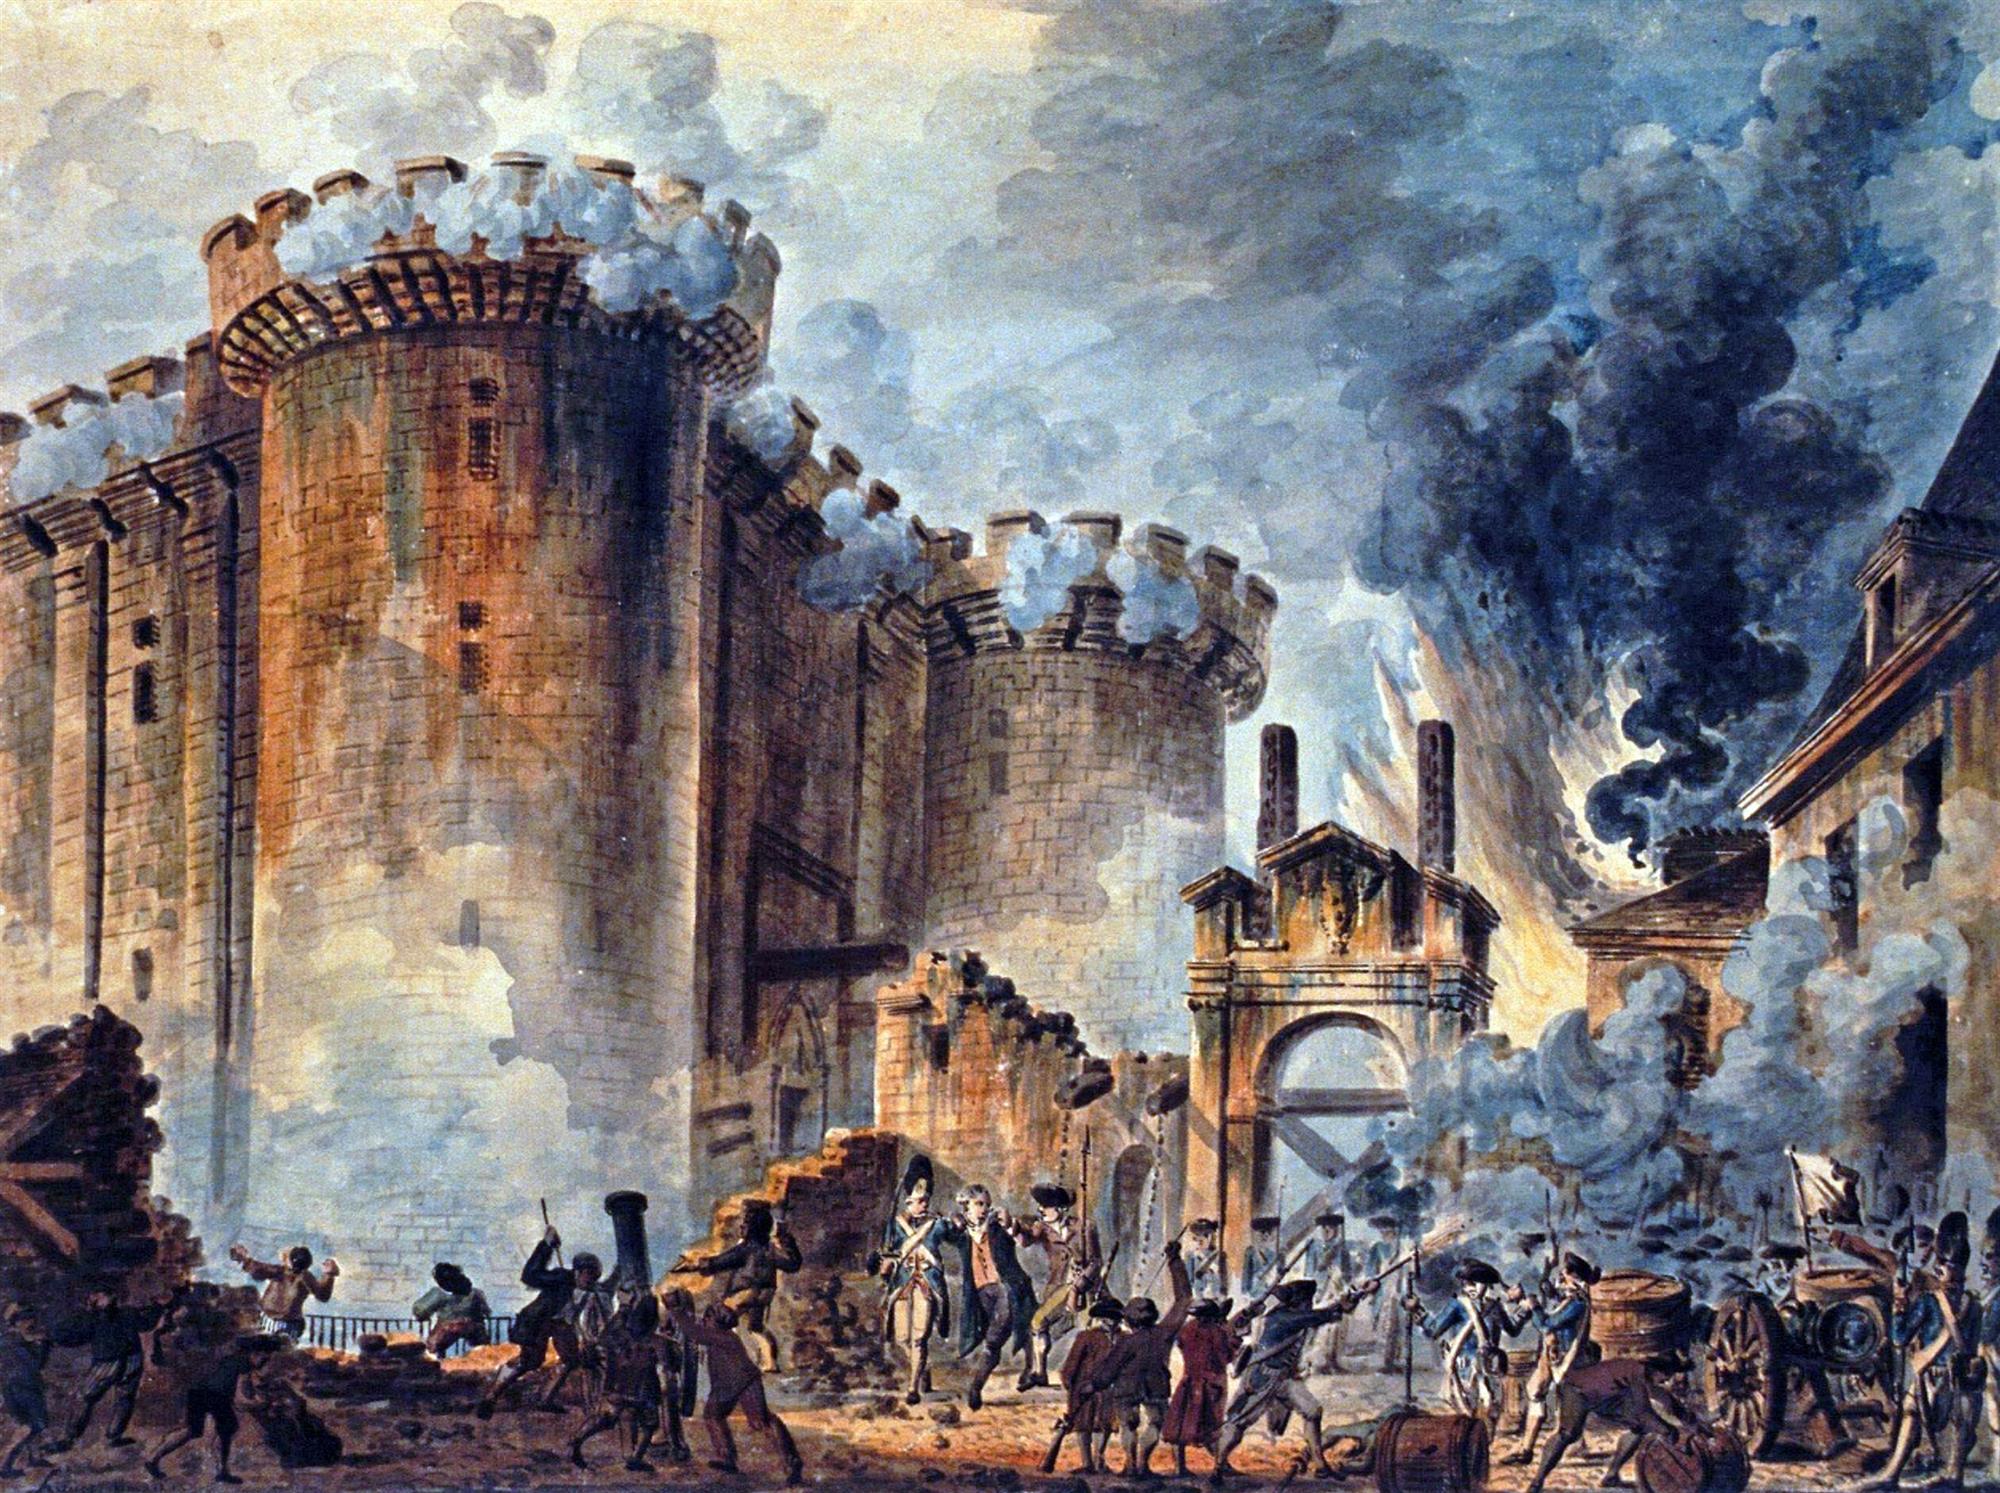 La toma de la Bastilla, Jean-Pierre Houël, 1789. La fortaleza se halla sitiada por los cañones de la guardia francesa, que apuntan directamente a sus puertas soltando un denso humo que emborrona la escena.